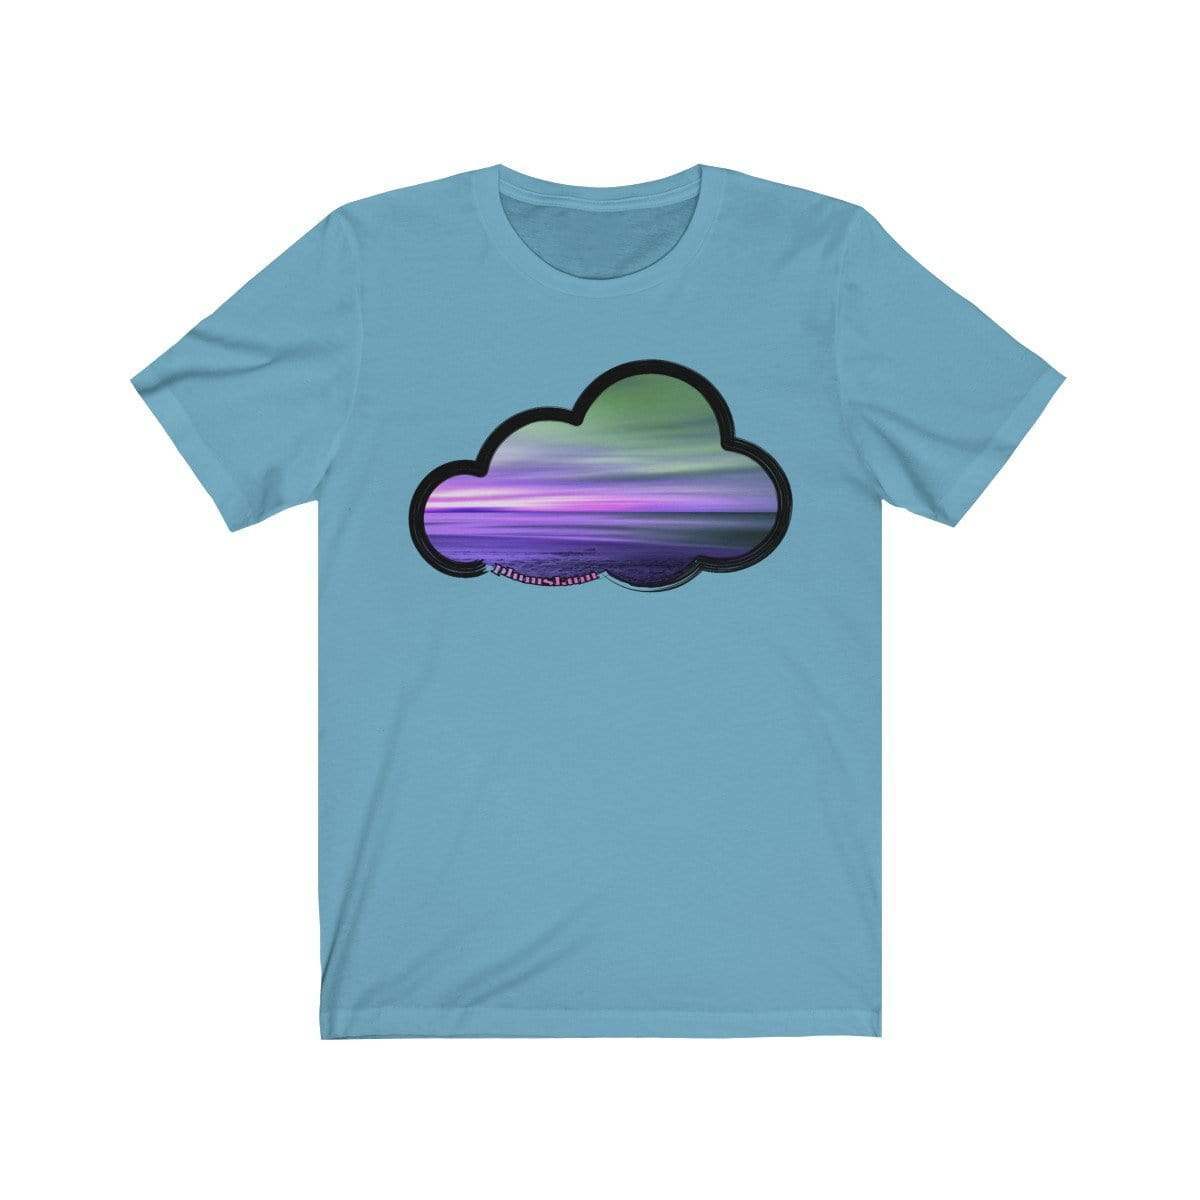 Printify T-Shirt Ocean Blue / M Beaches Art Clouds Tee